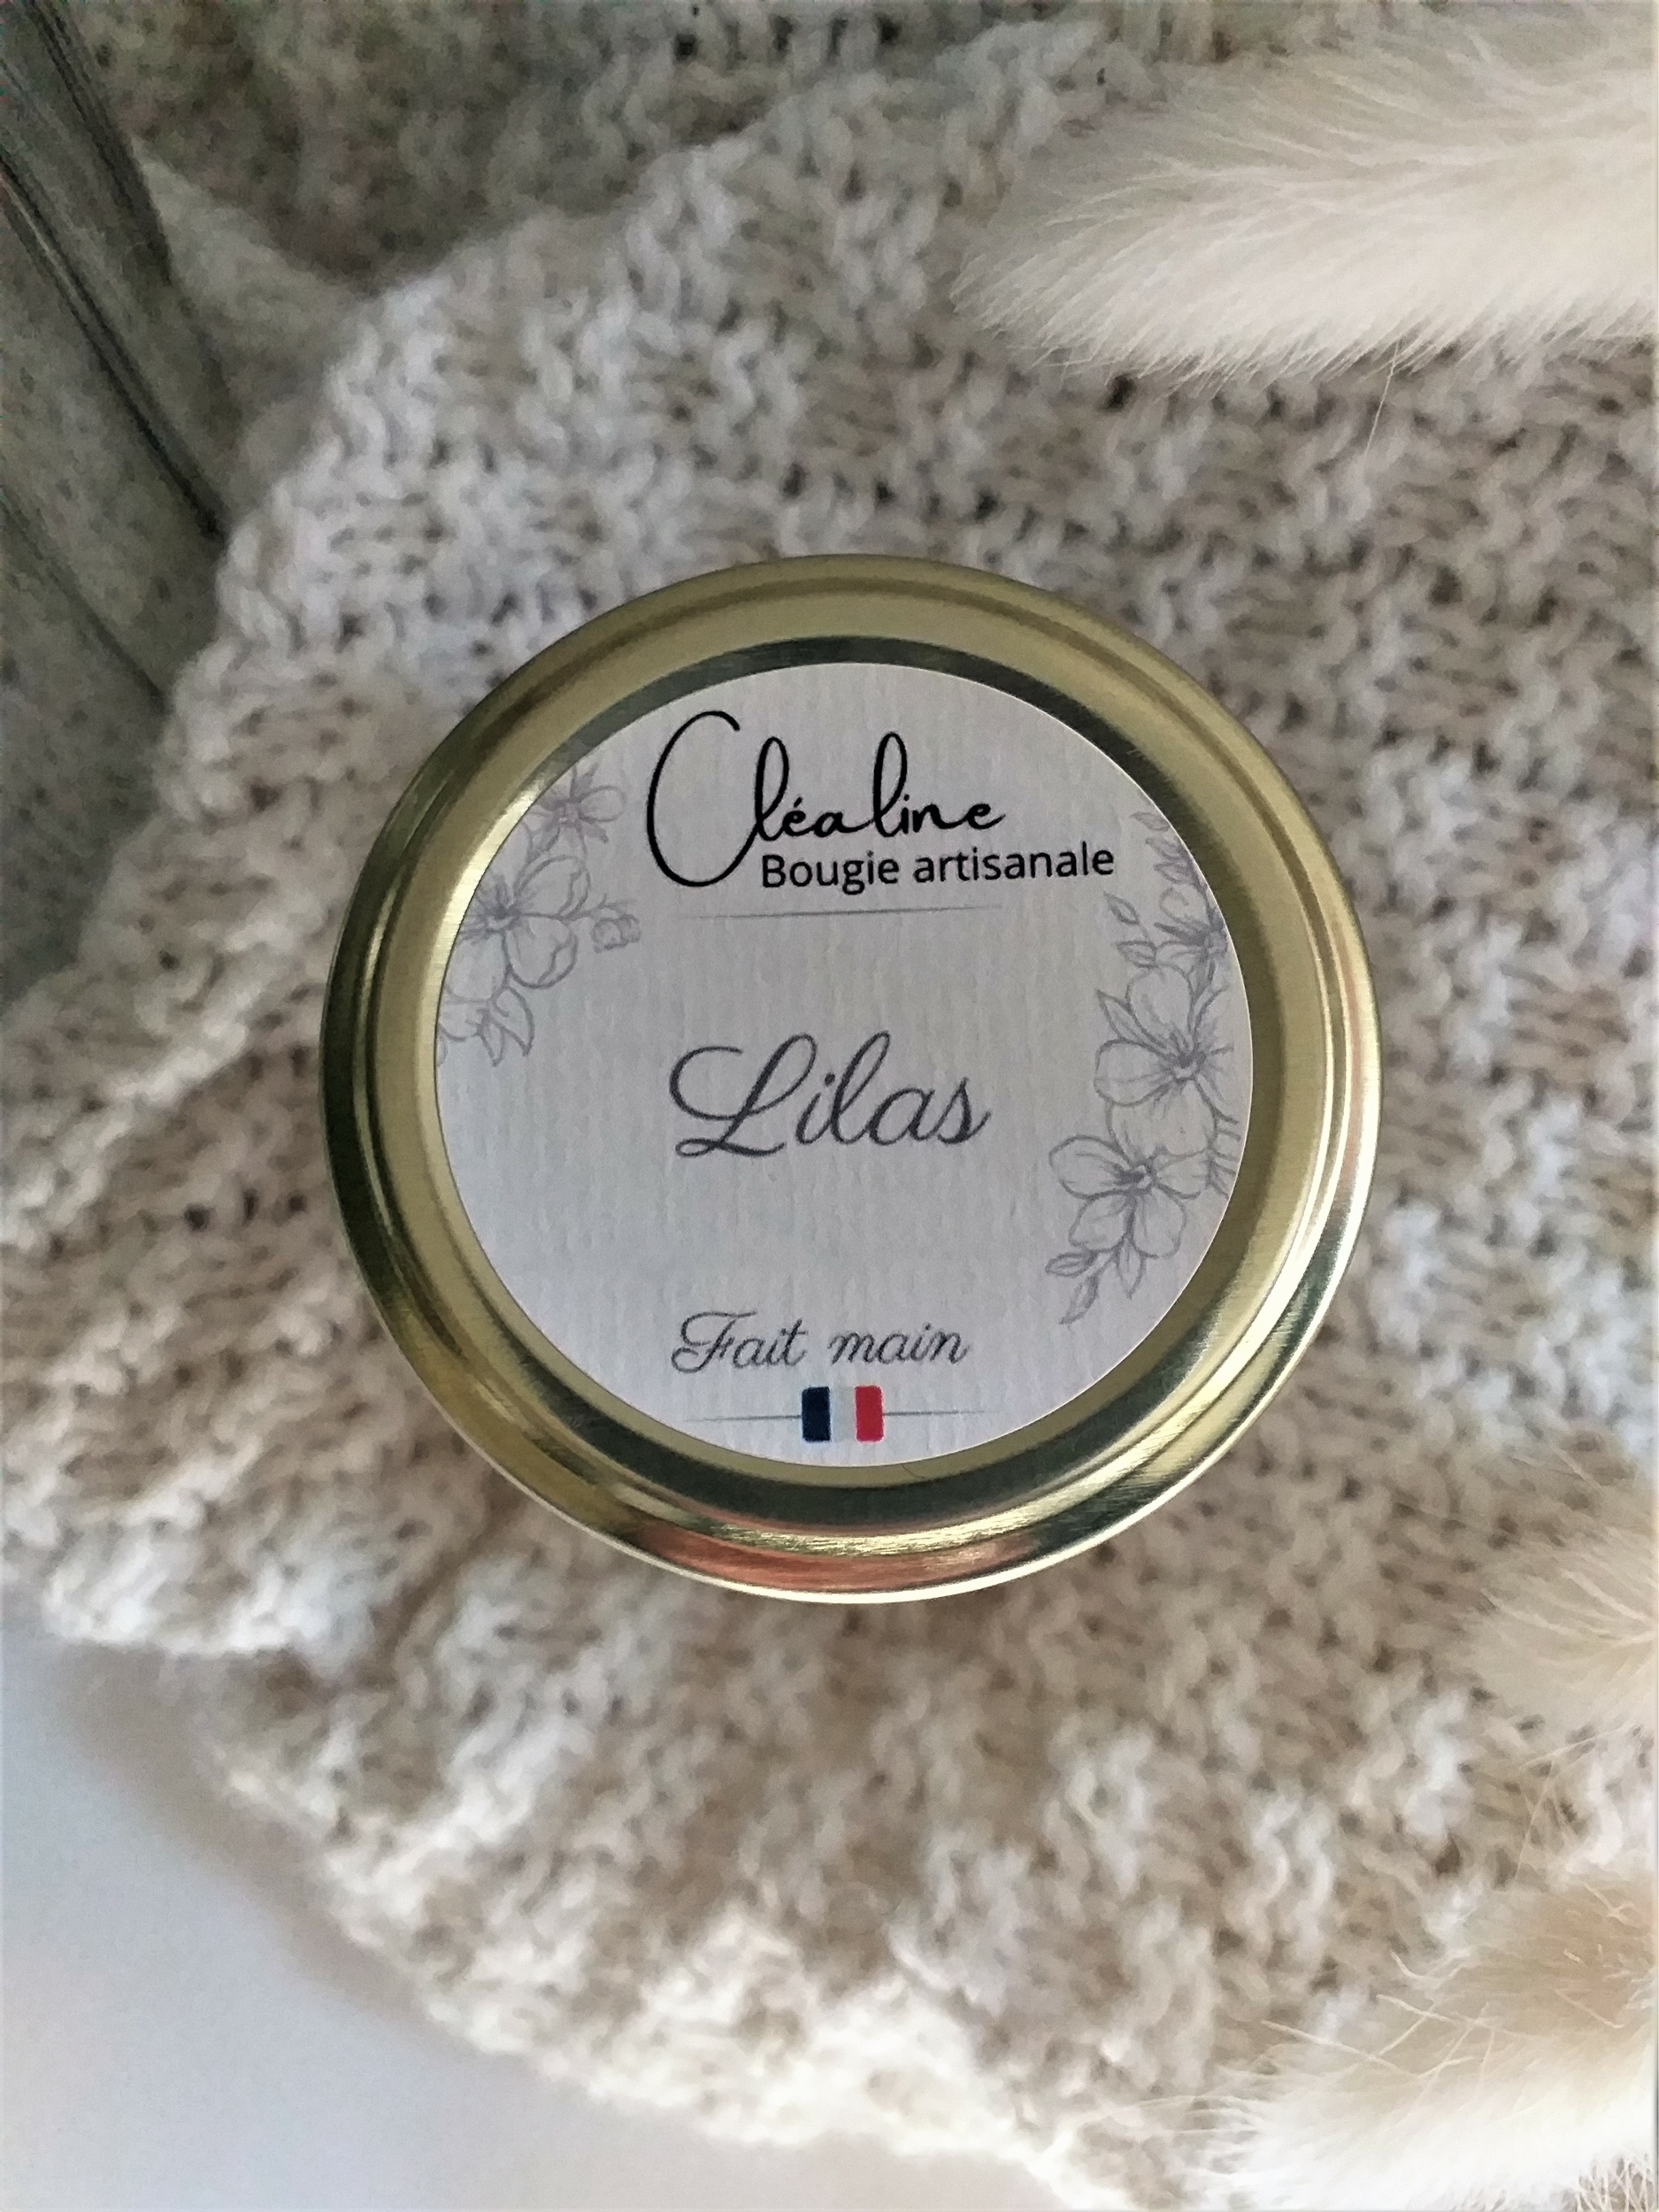 Bougie artisanale parfumée Lilas